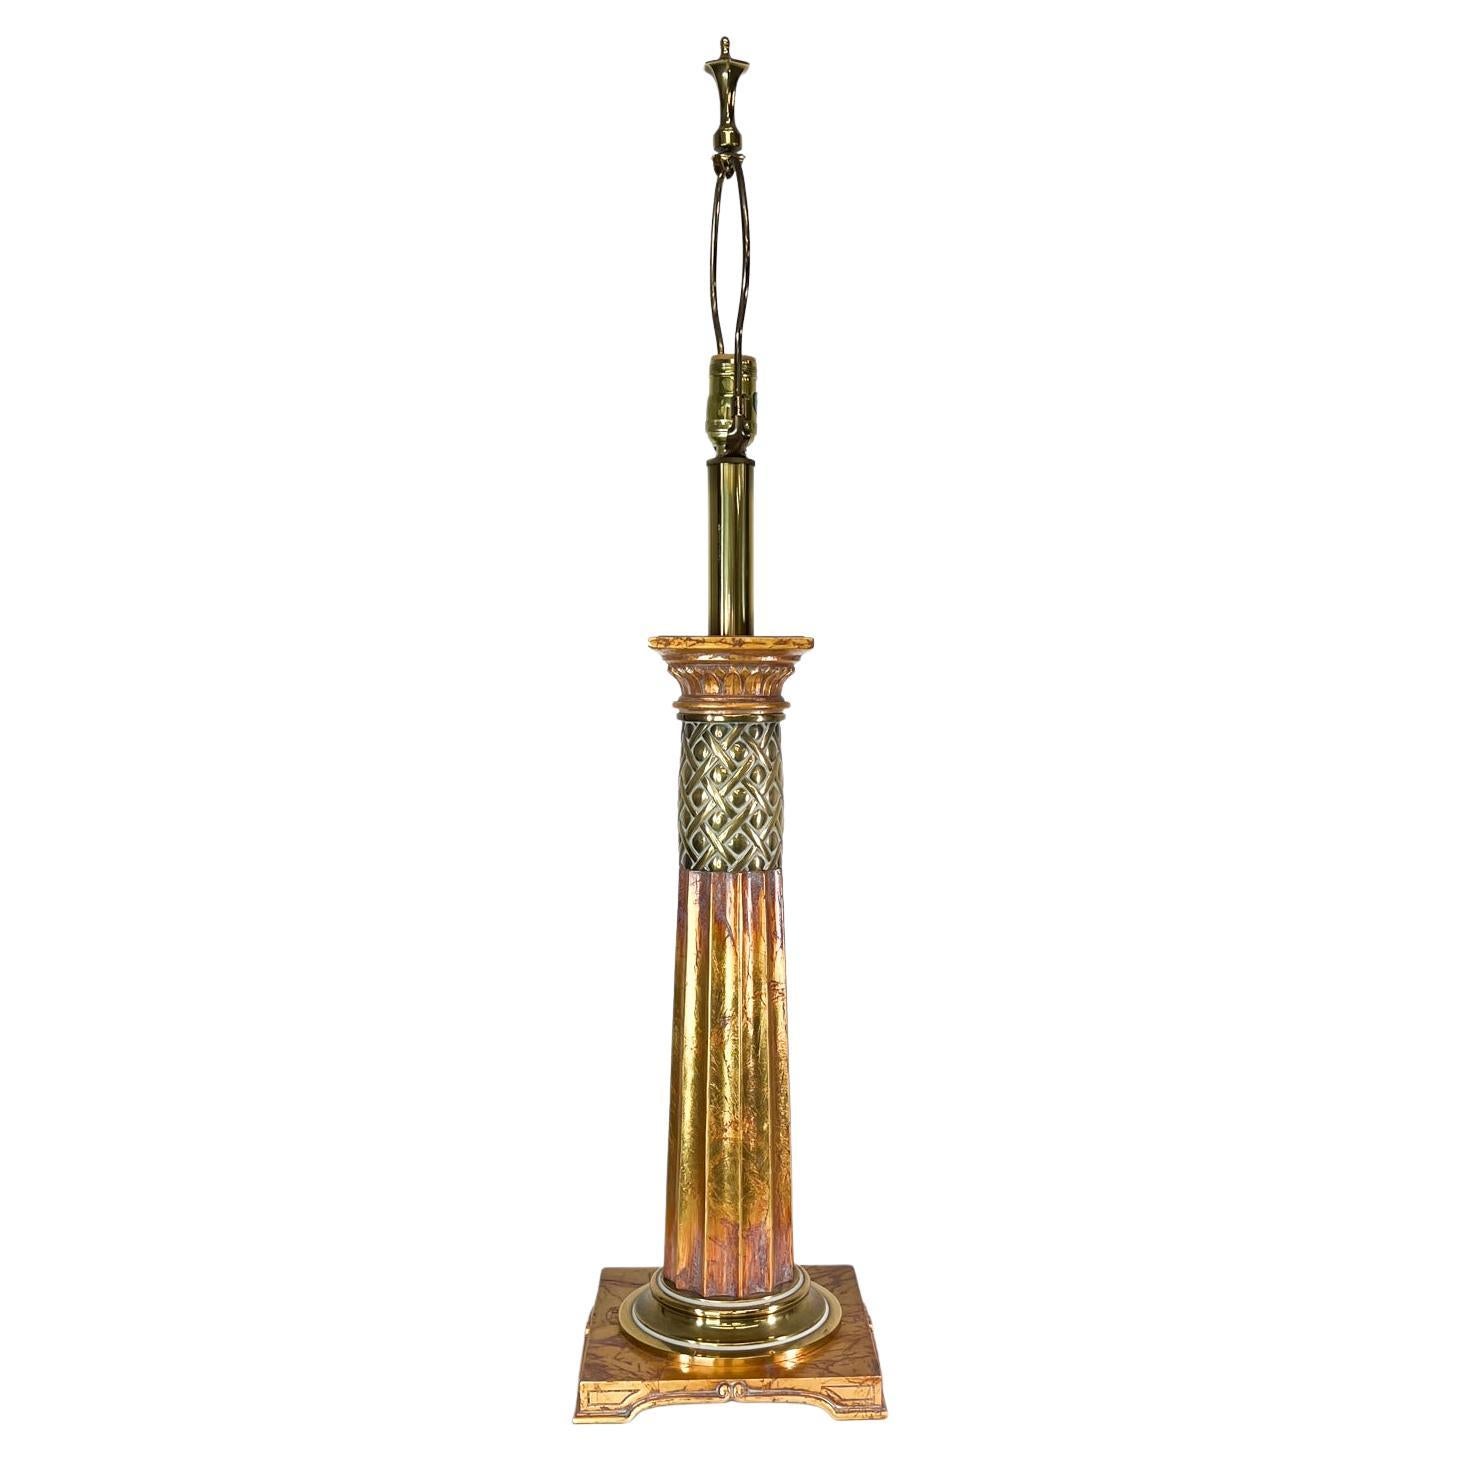 Elegante neoklassizistische korinthische Tischlampe mit Blattgold, Grand Tour Decor, 1960er Jahre